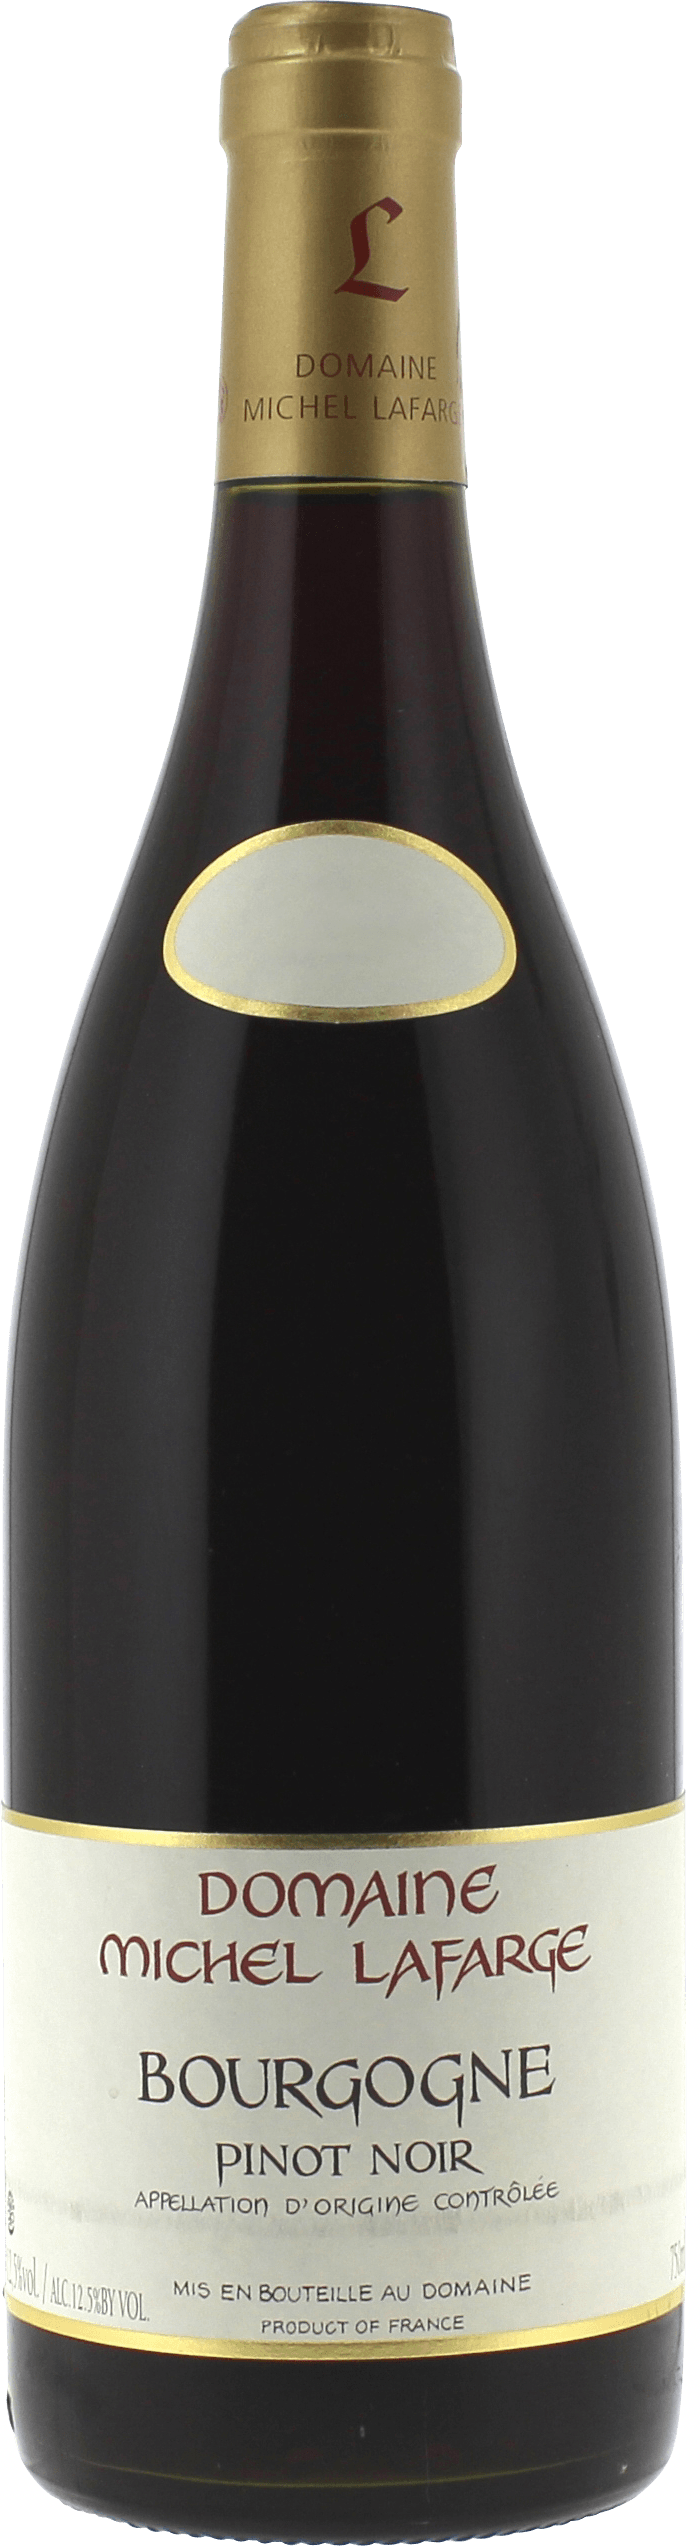 Bourgogne pinot noir 2017  LAFARGE, Bourgogne rouge